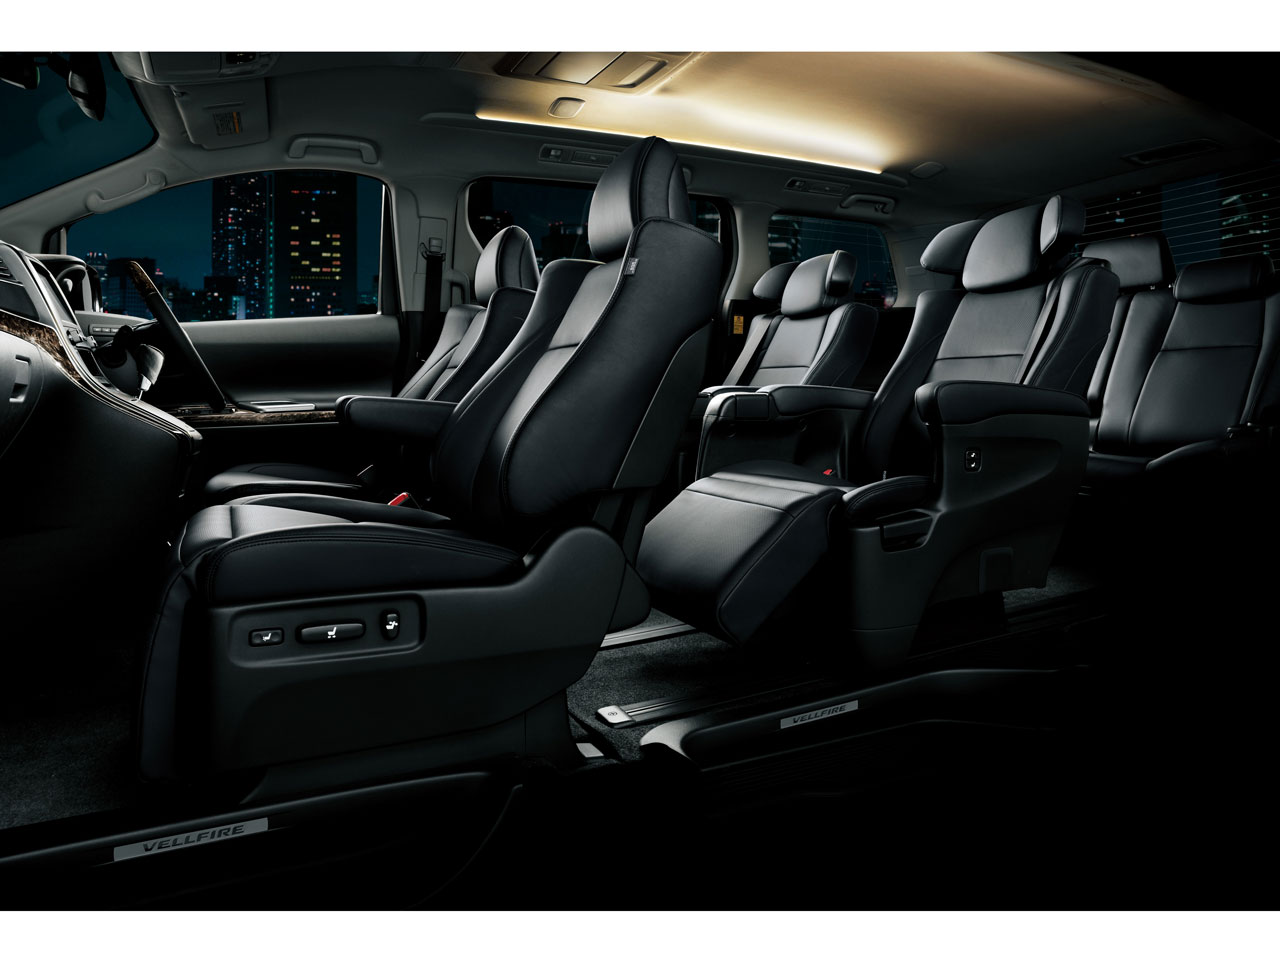 トヨタ ヴェルファイア 08年モデル 2 4z 7人乗り の価格 性能 装備 オプション 11年11月1日発売 価格 Com